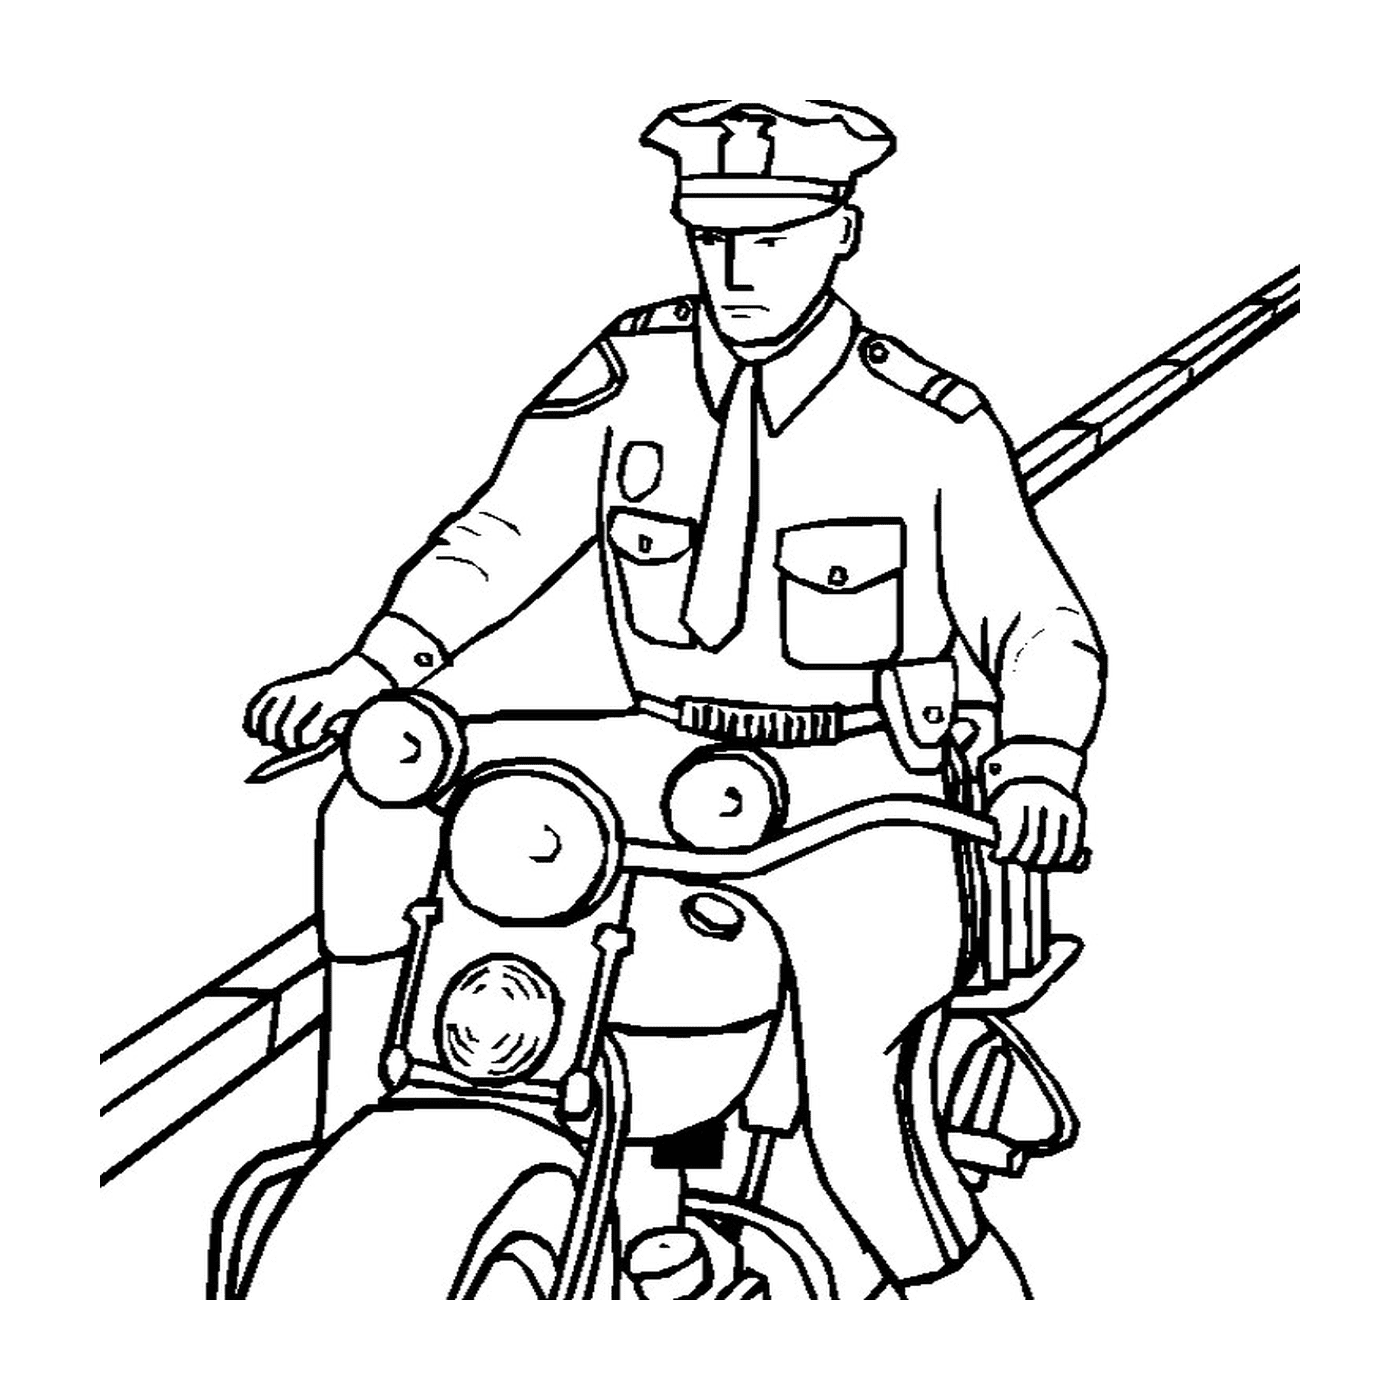  poliziotto alla guida di motociclette 